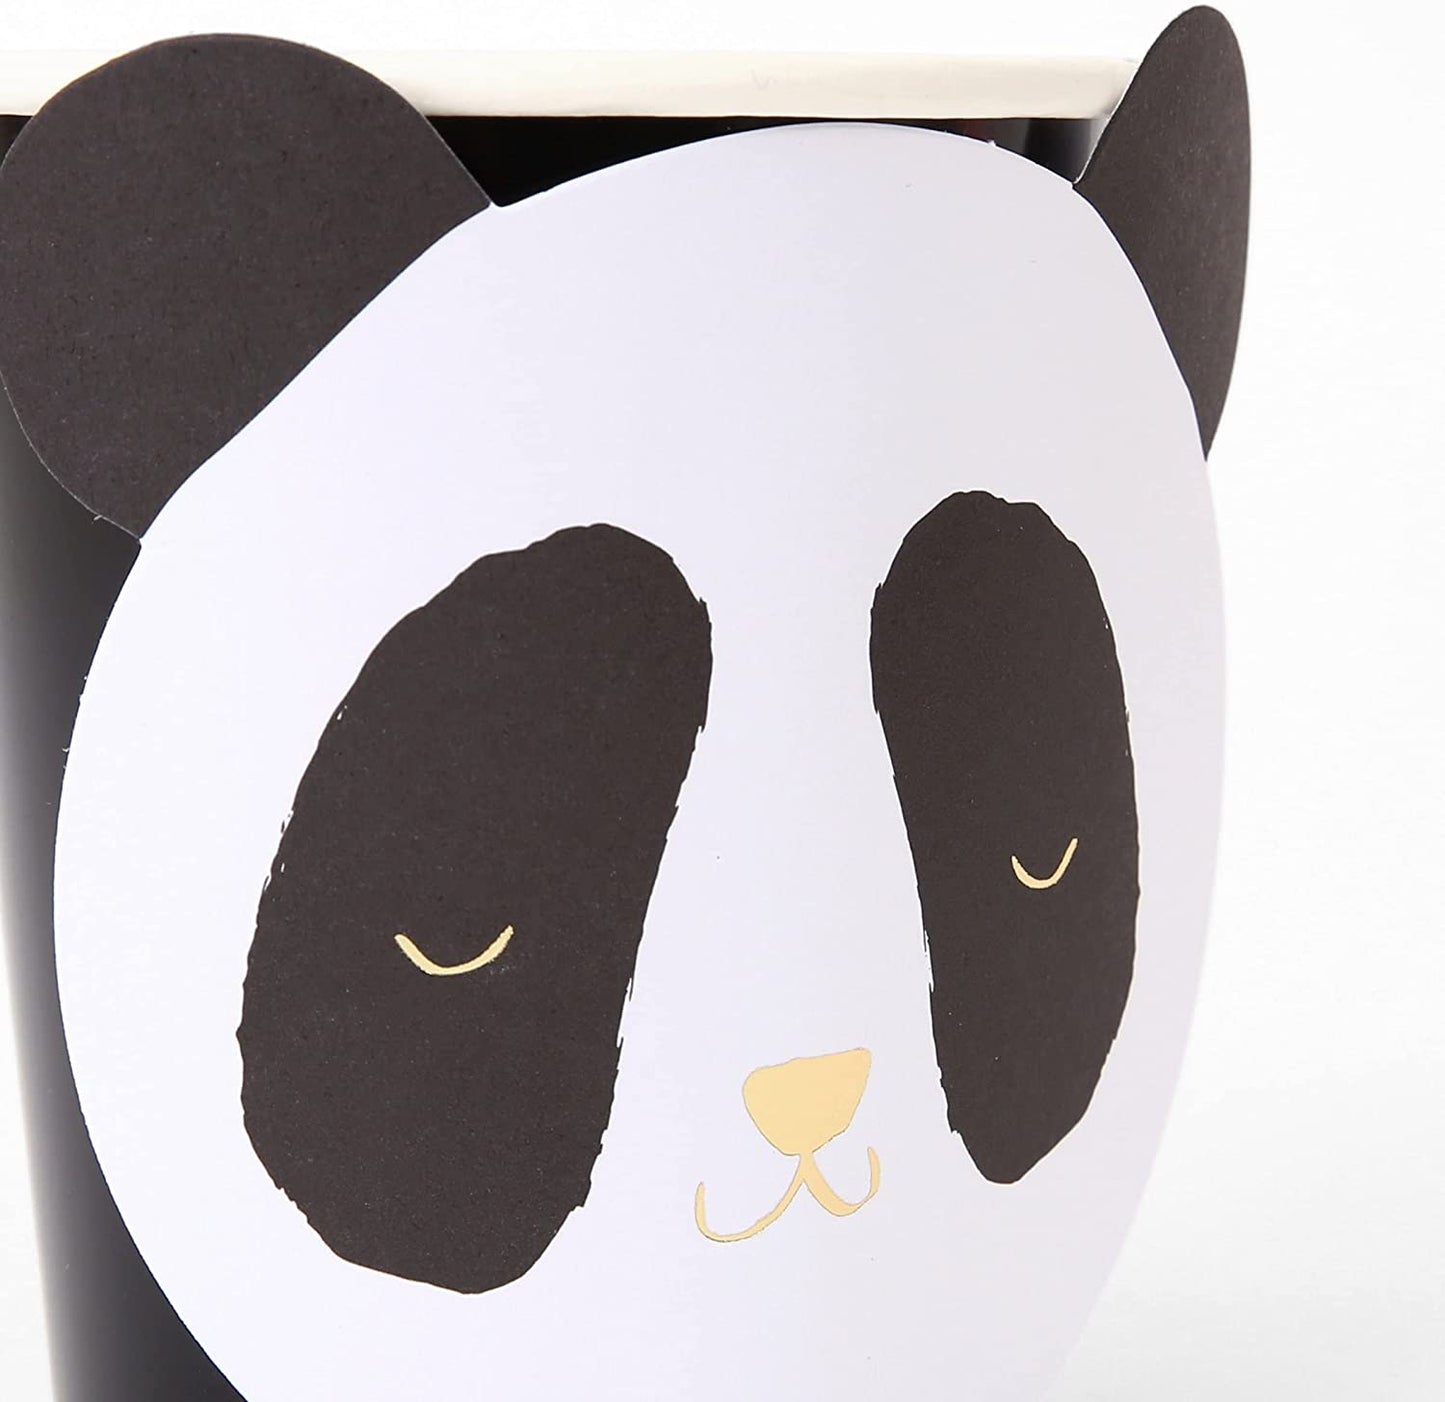 Panda Bear Paper Cups